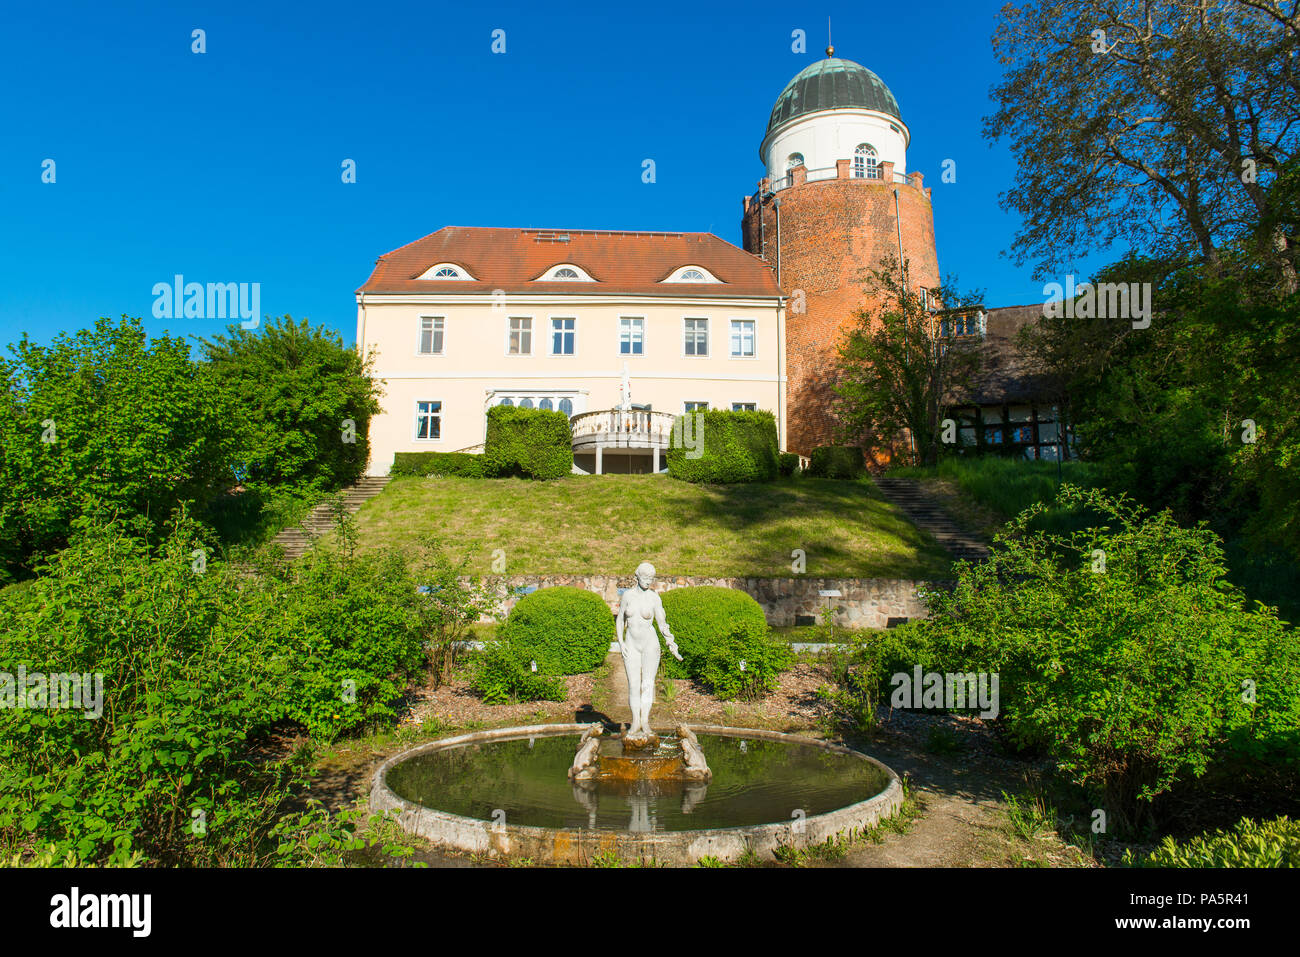 Parco e Castello di Lenzen, centro visitatori della riserva della biosfera paesaggio del fiume Elba, Lenzen, Prignitz, Brandeburgo, Germania Foto Stock